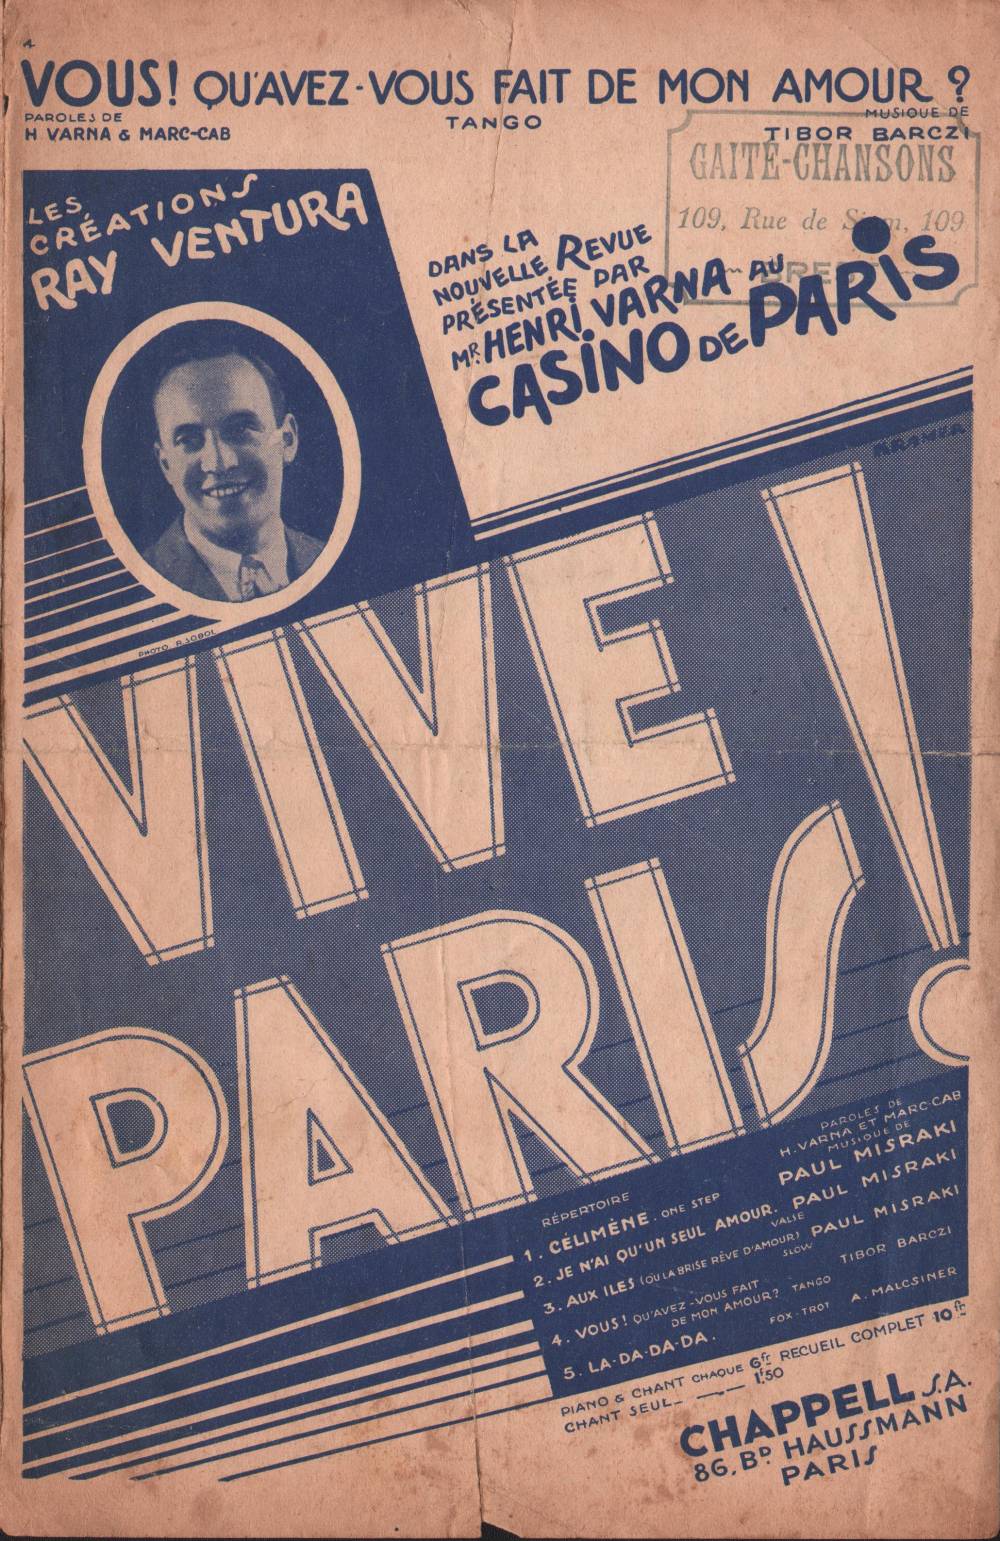 Vive Paris  - Ray Ventura -1.jpg